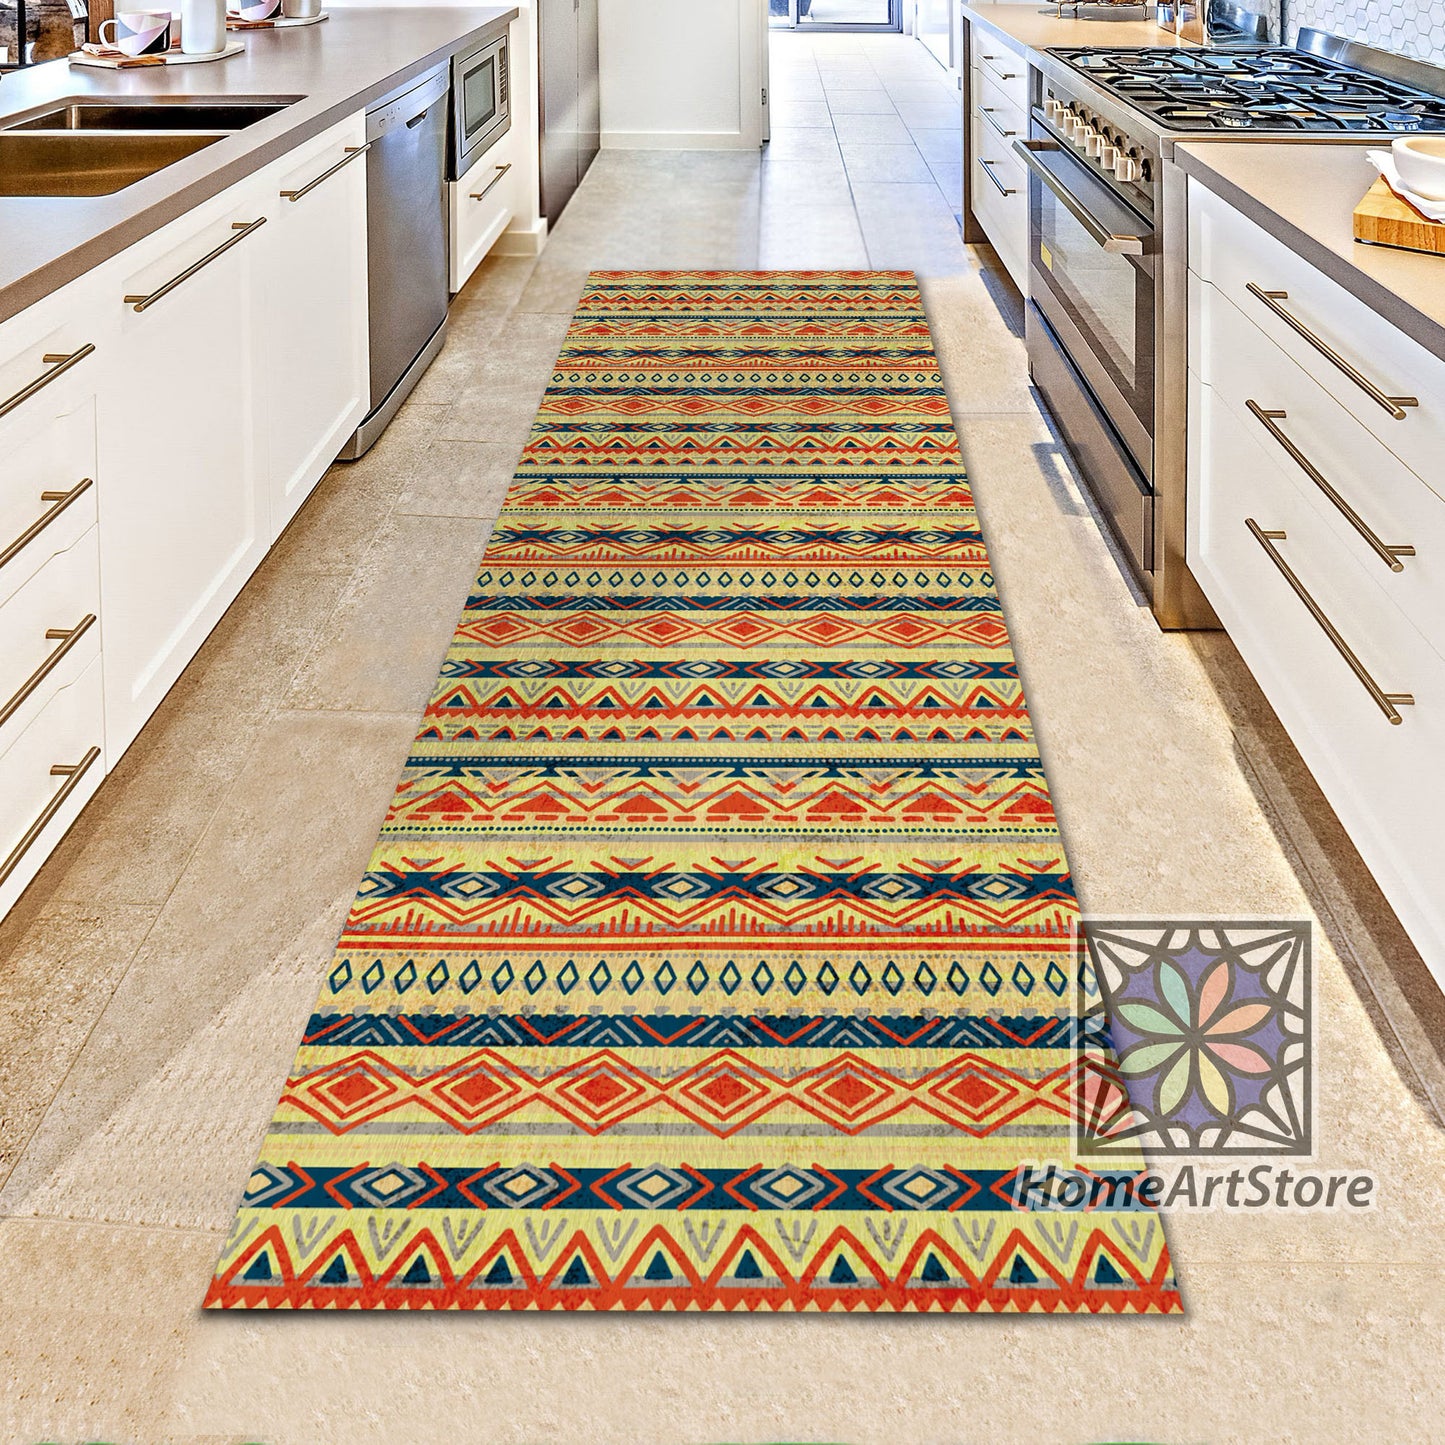 Tribal Themed Runner Rug, Kitchen Ethnic Runner Rug, Hallway Runner Carpet, Aztec Decor, Bohemian Carpet